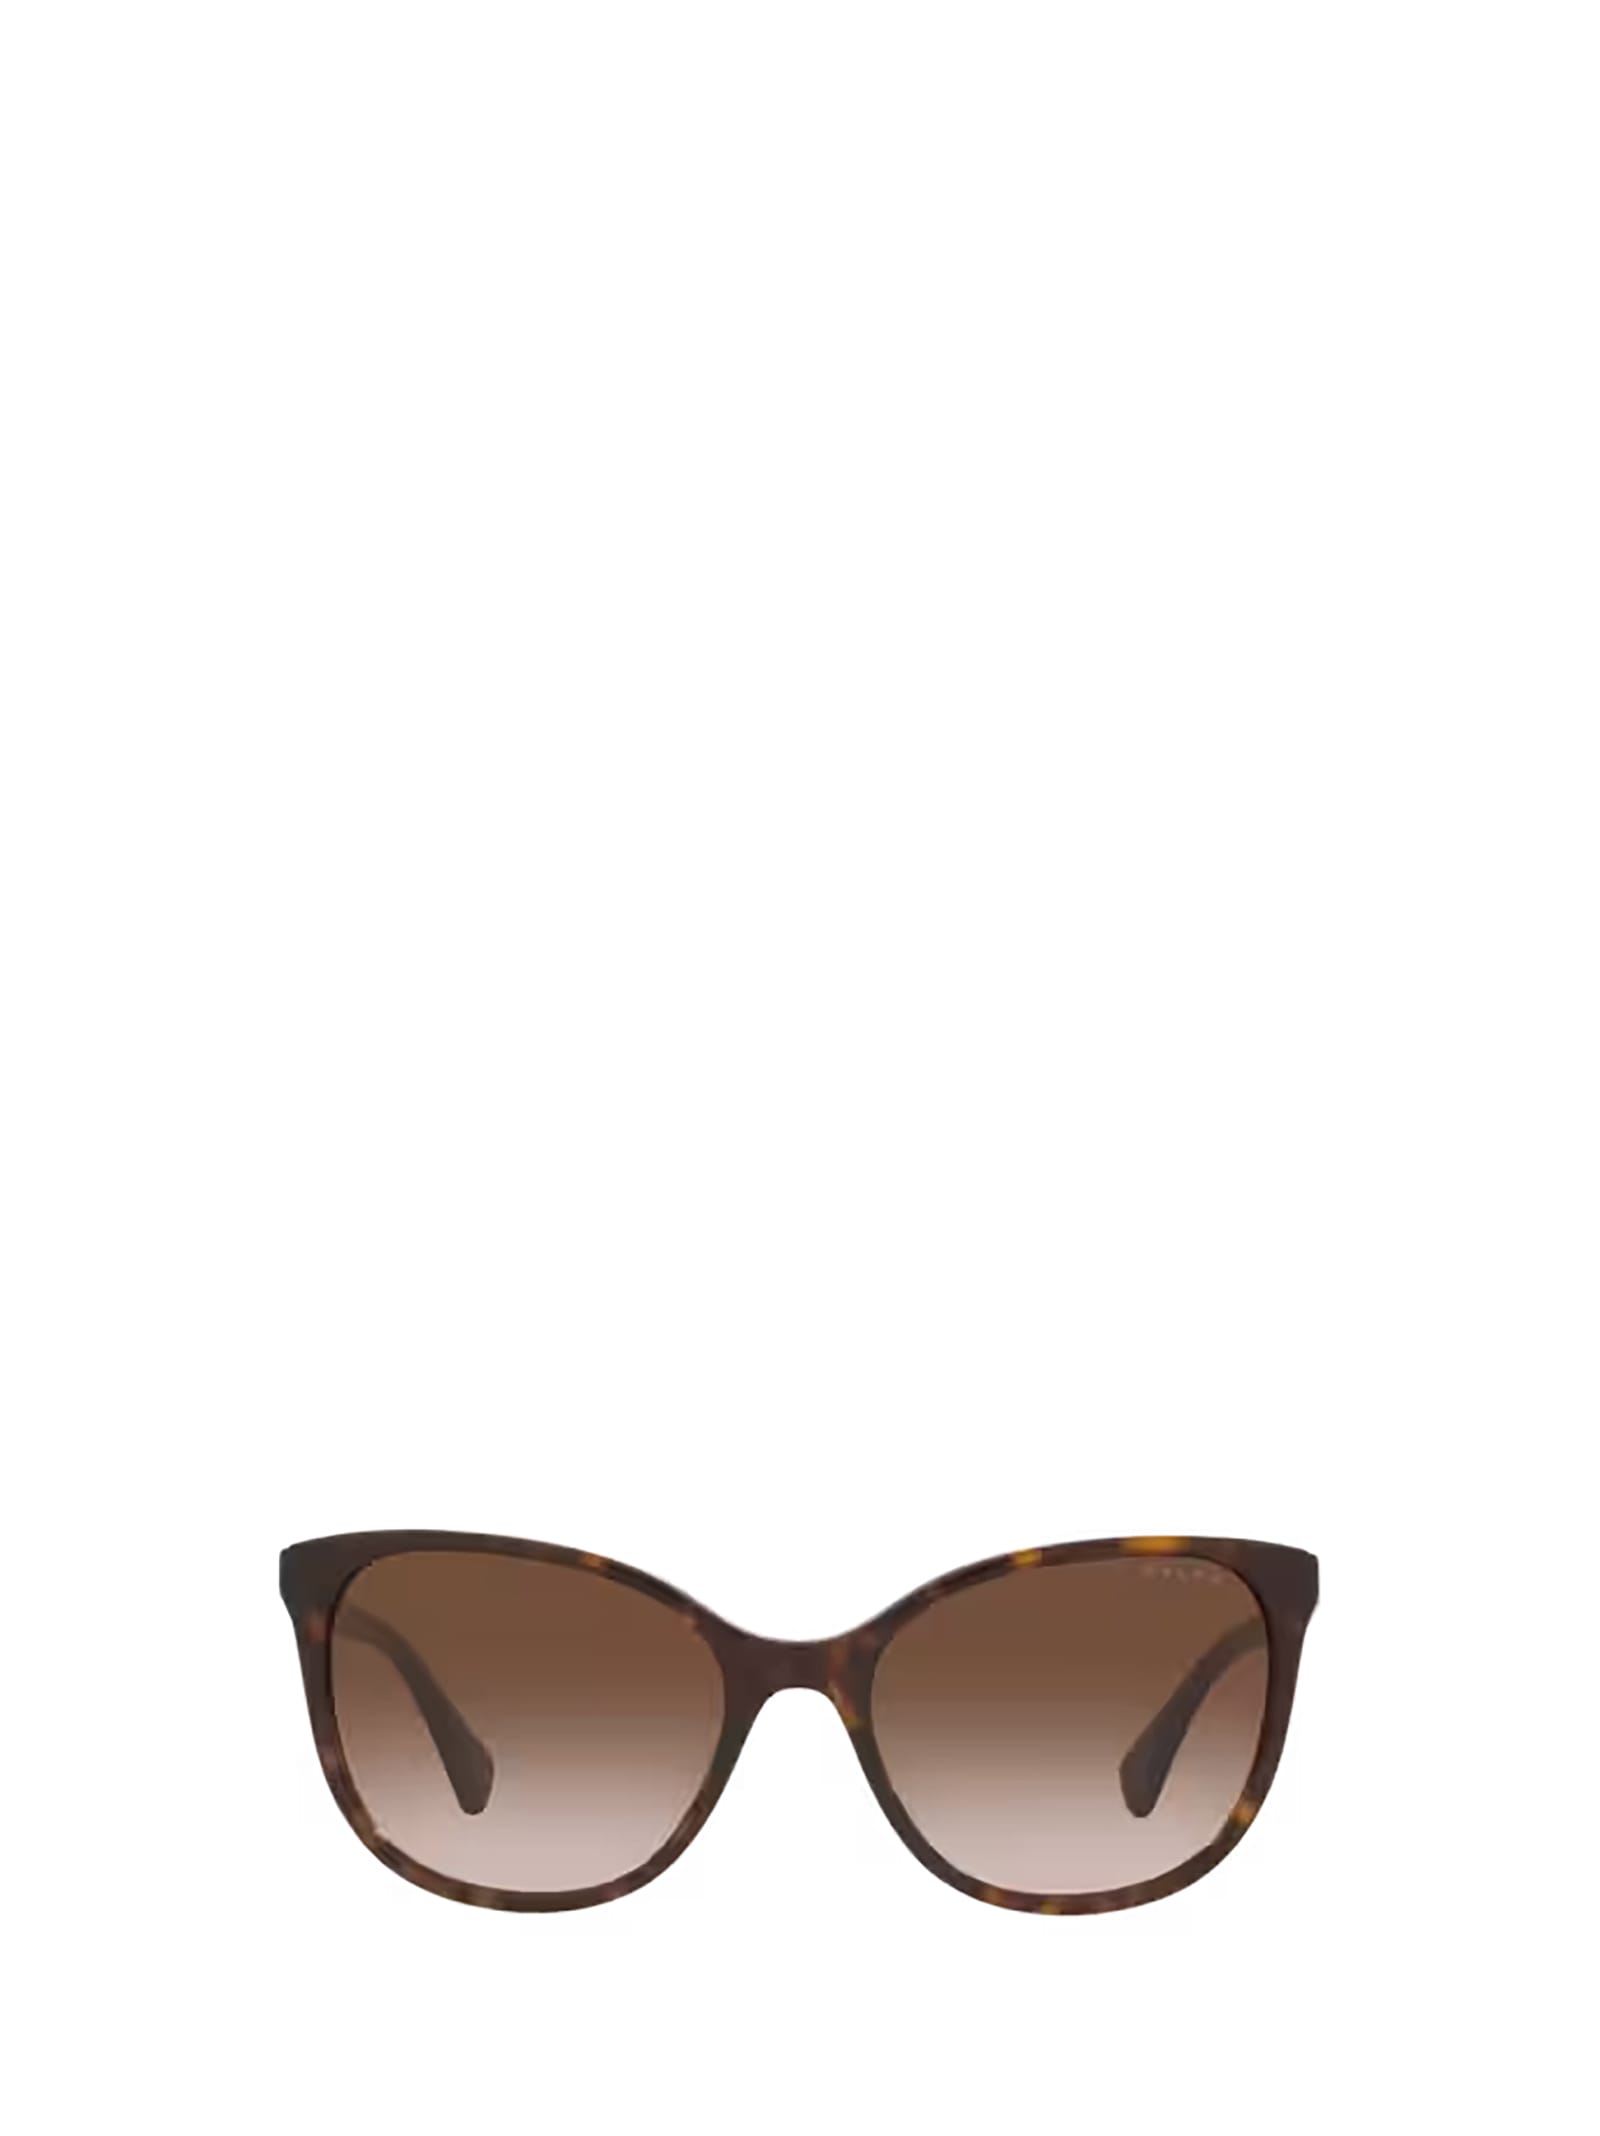 Polo Ralph Lauren Sunglasses In Havana Brown